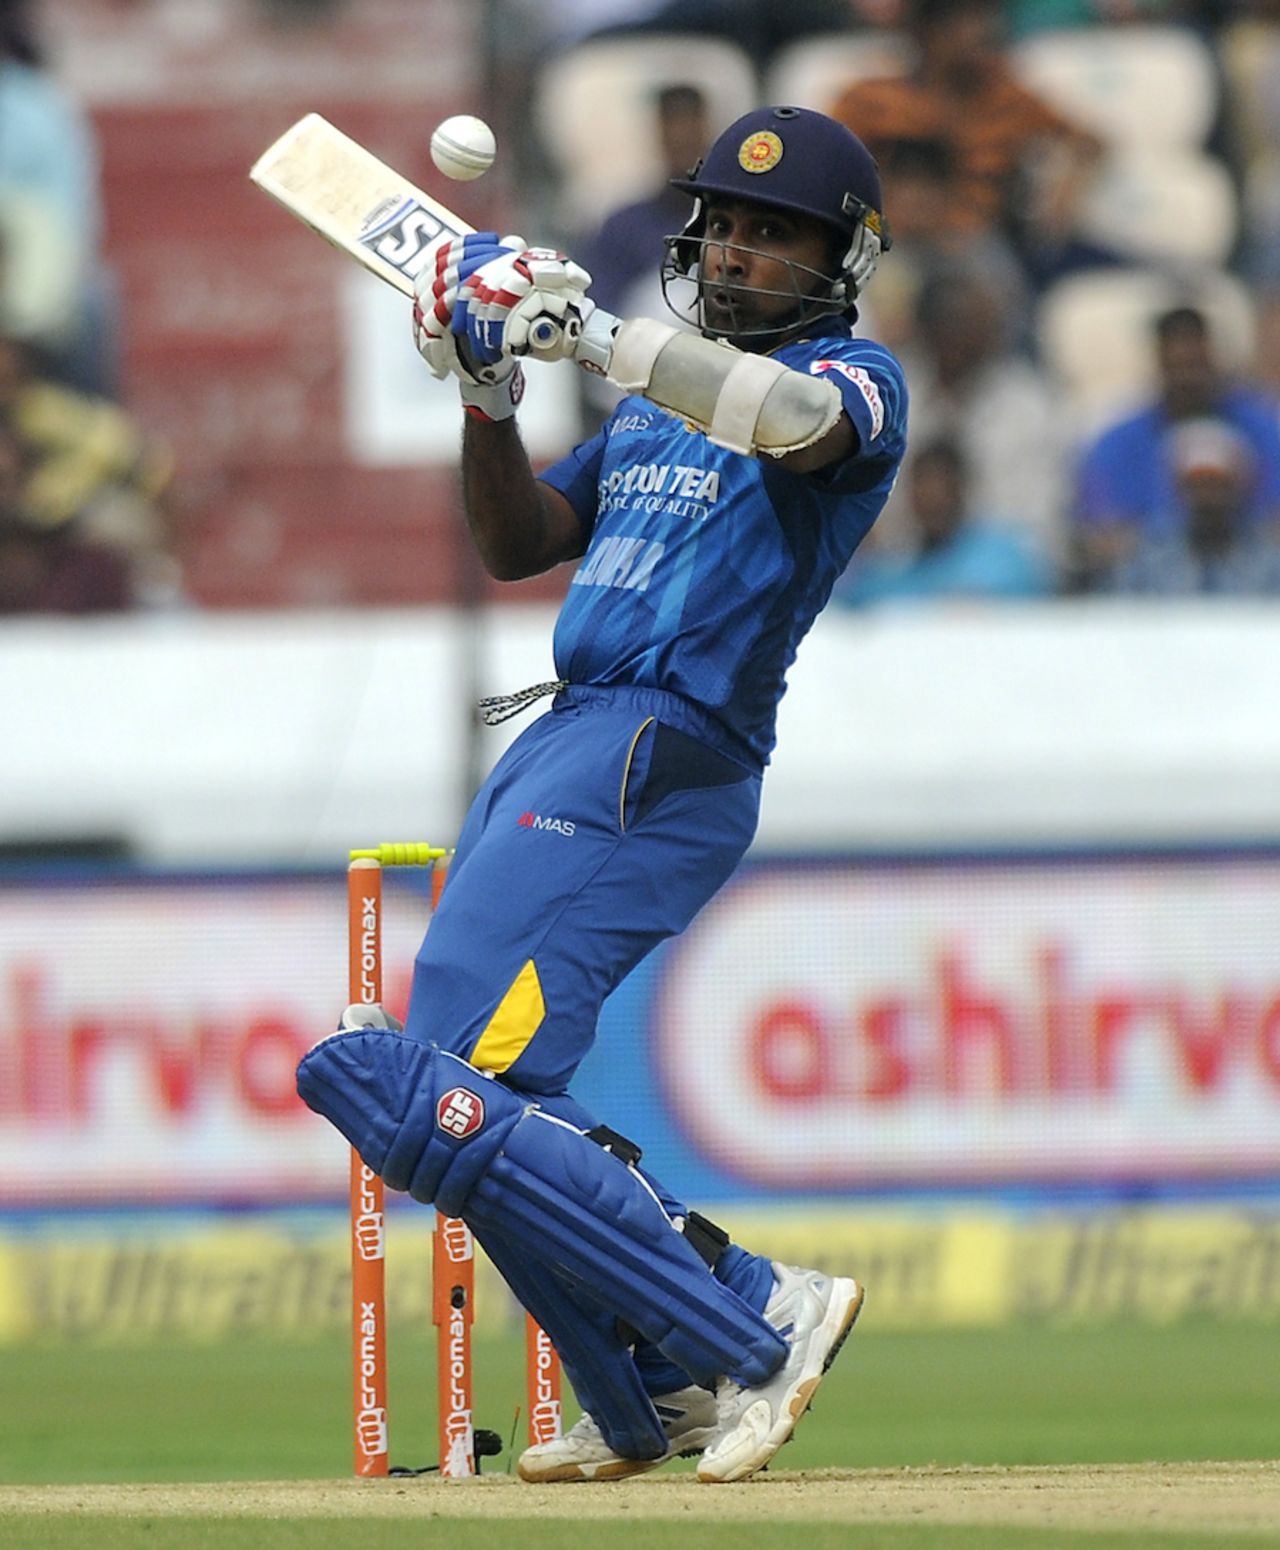 Mahela Jayawardene looks to play a ramp shot, India v Sri Lanka, 3rd ODI, Hyderabad, November 9, 2014